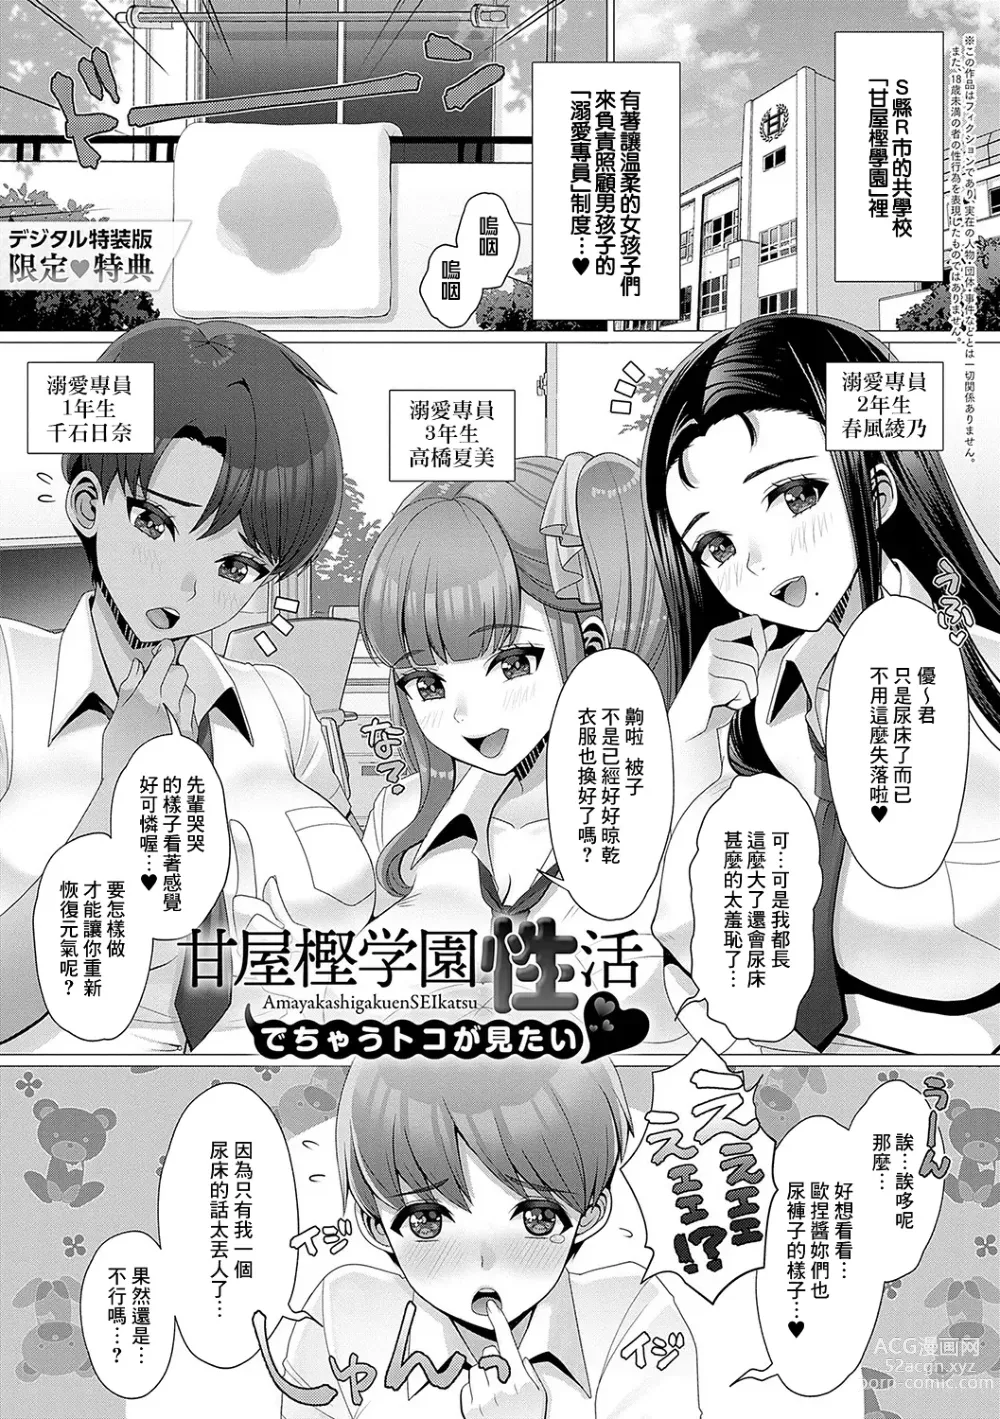 Page 1 of manga Amayakashi Gakuen SEIkatsu ♥ Dechau toko ga Mitai ❤